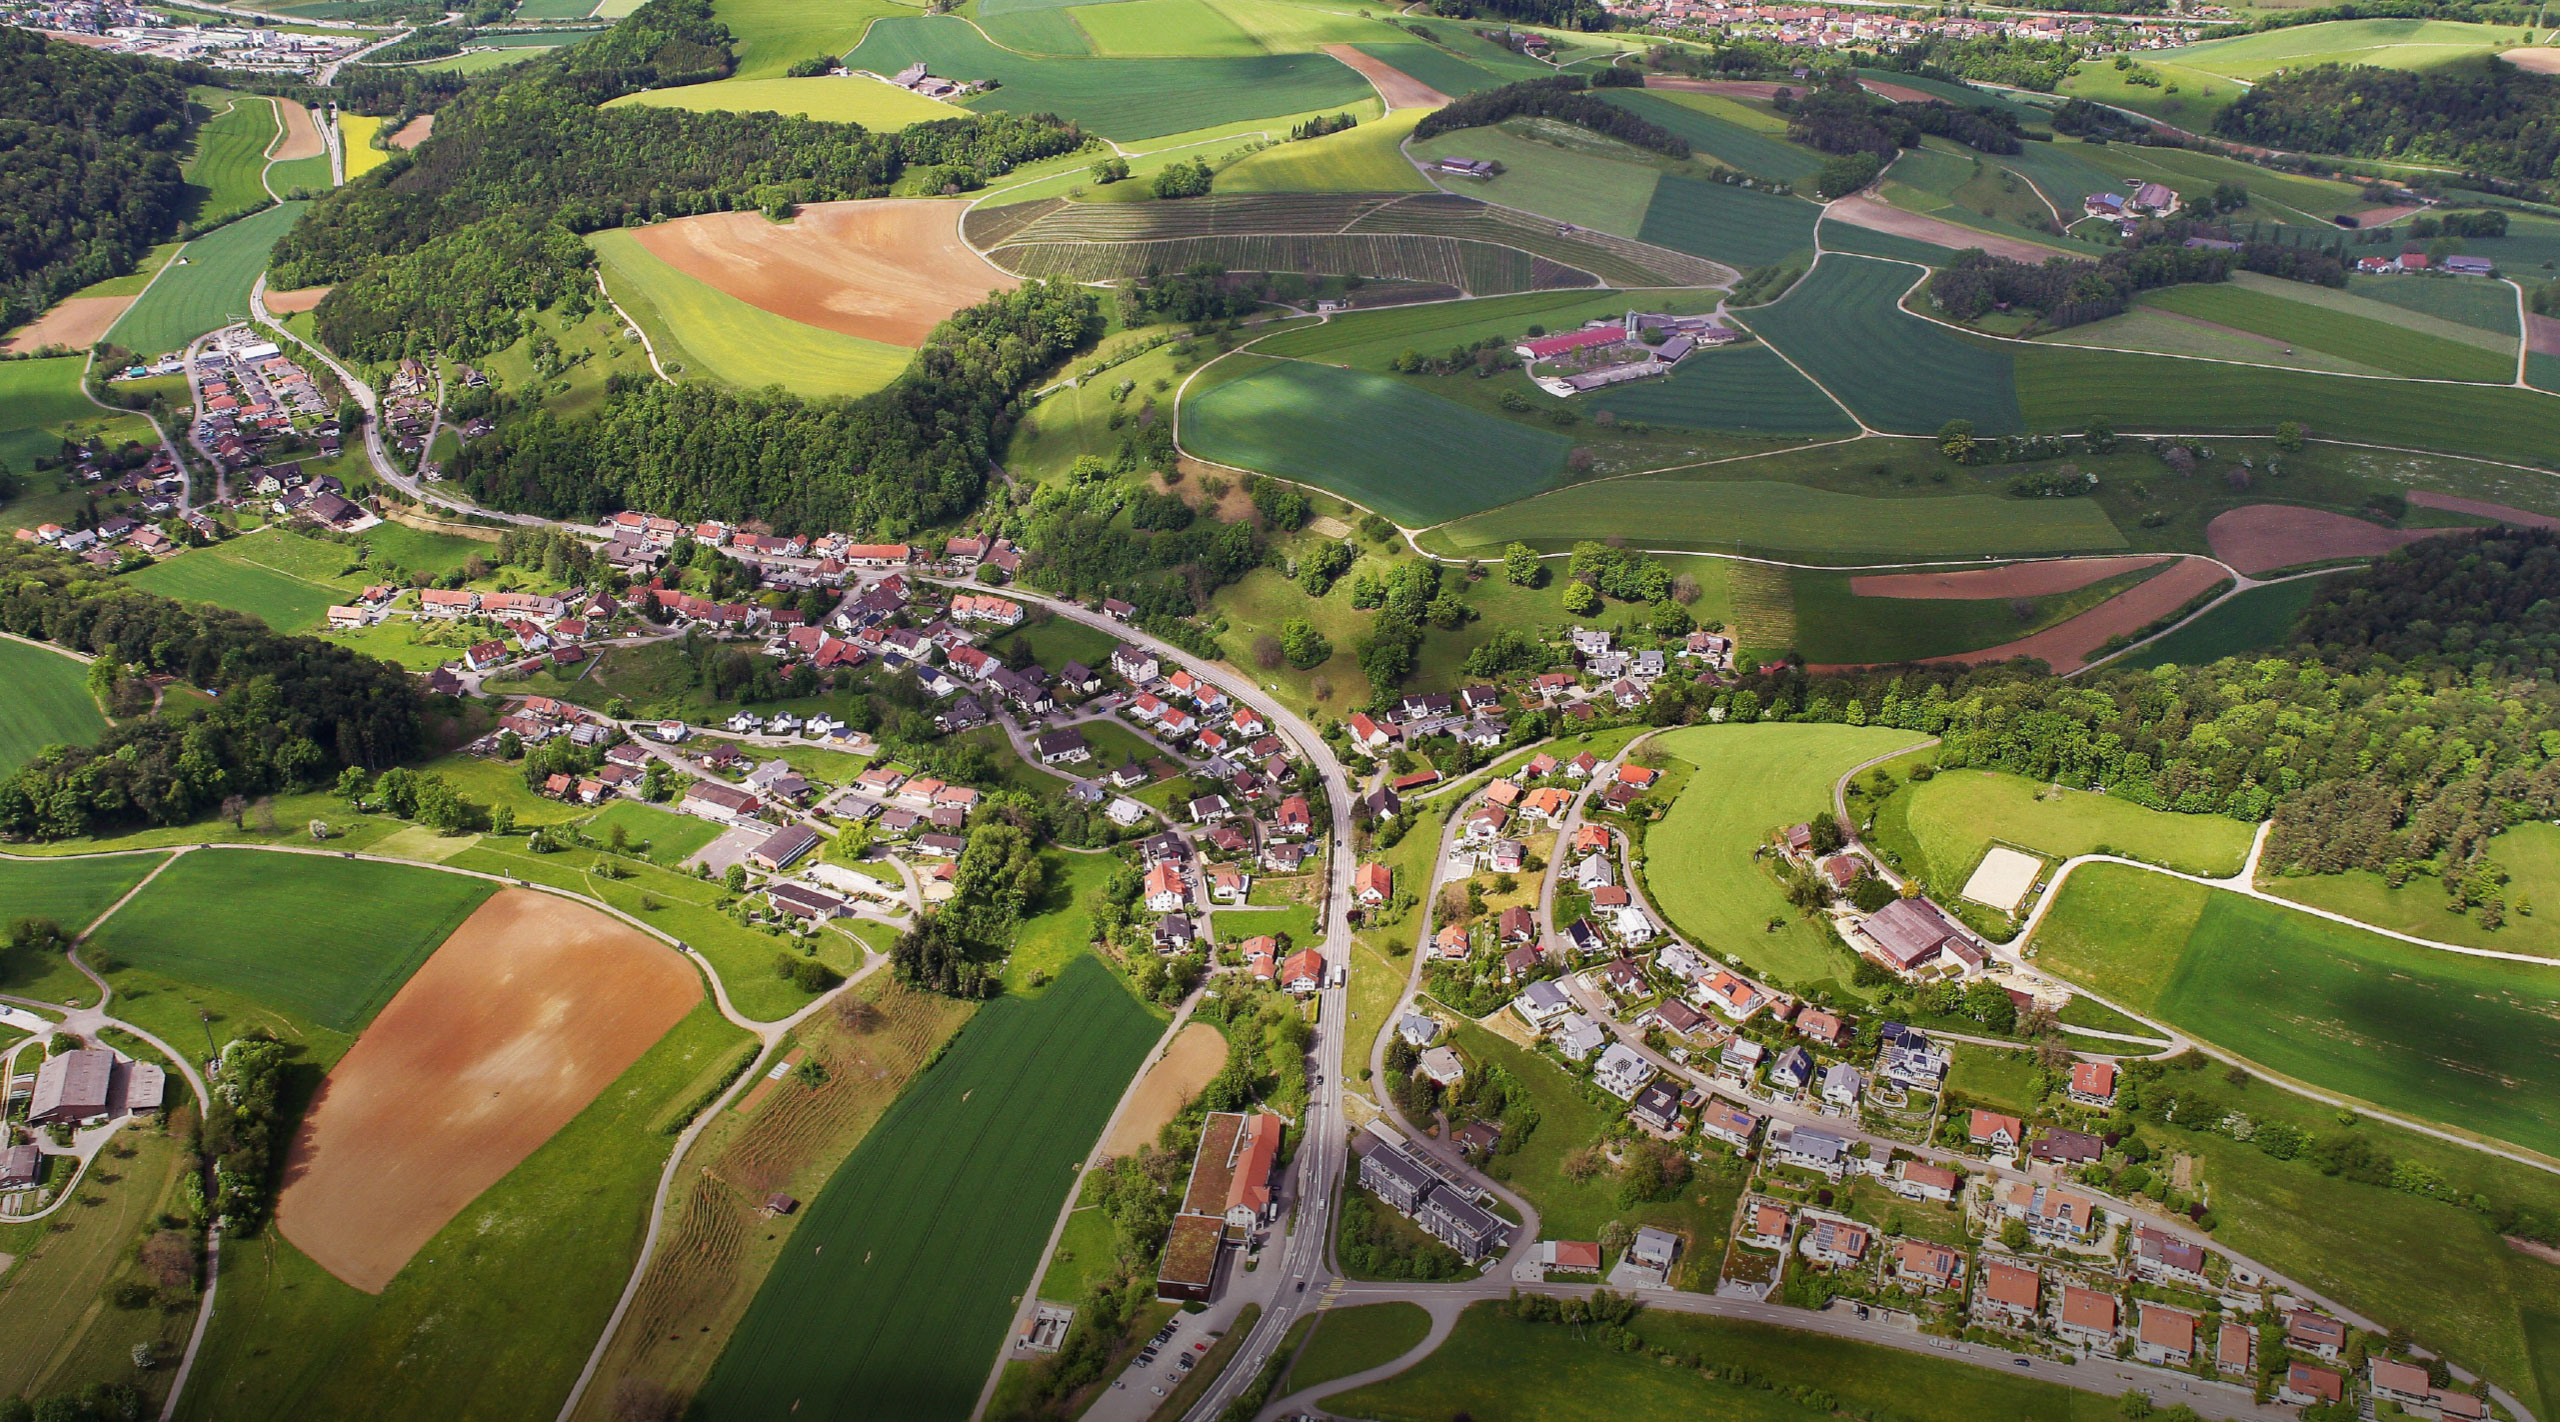 Gemeinde Herznach-Ueken